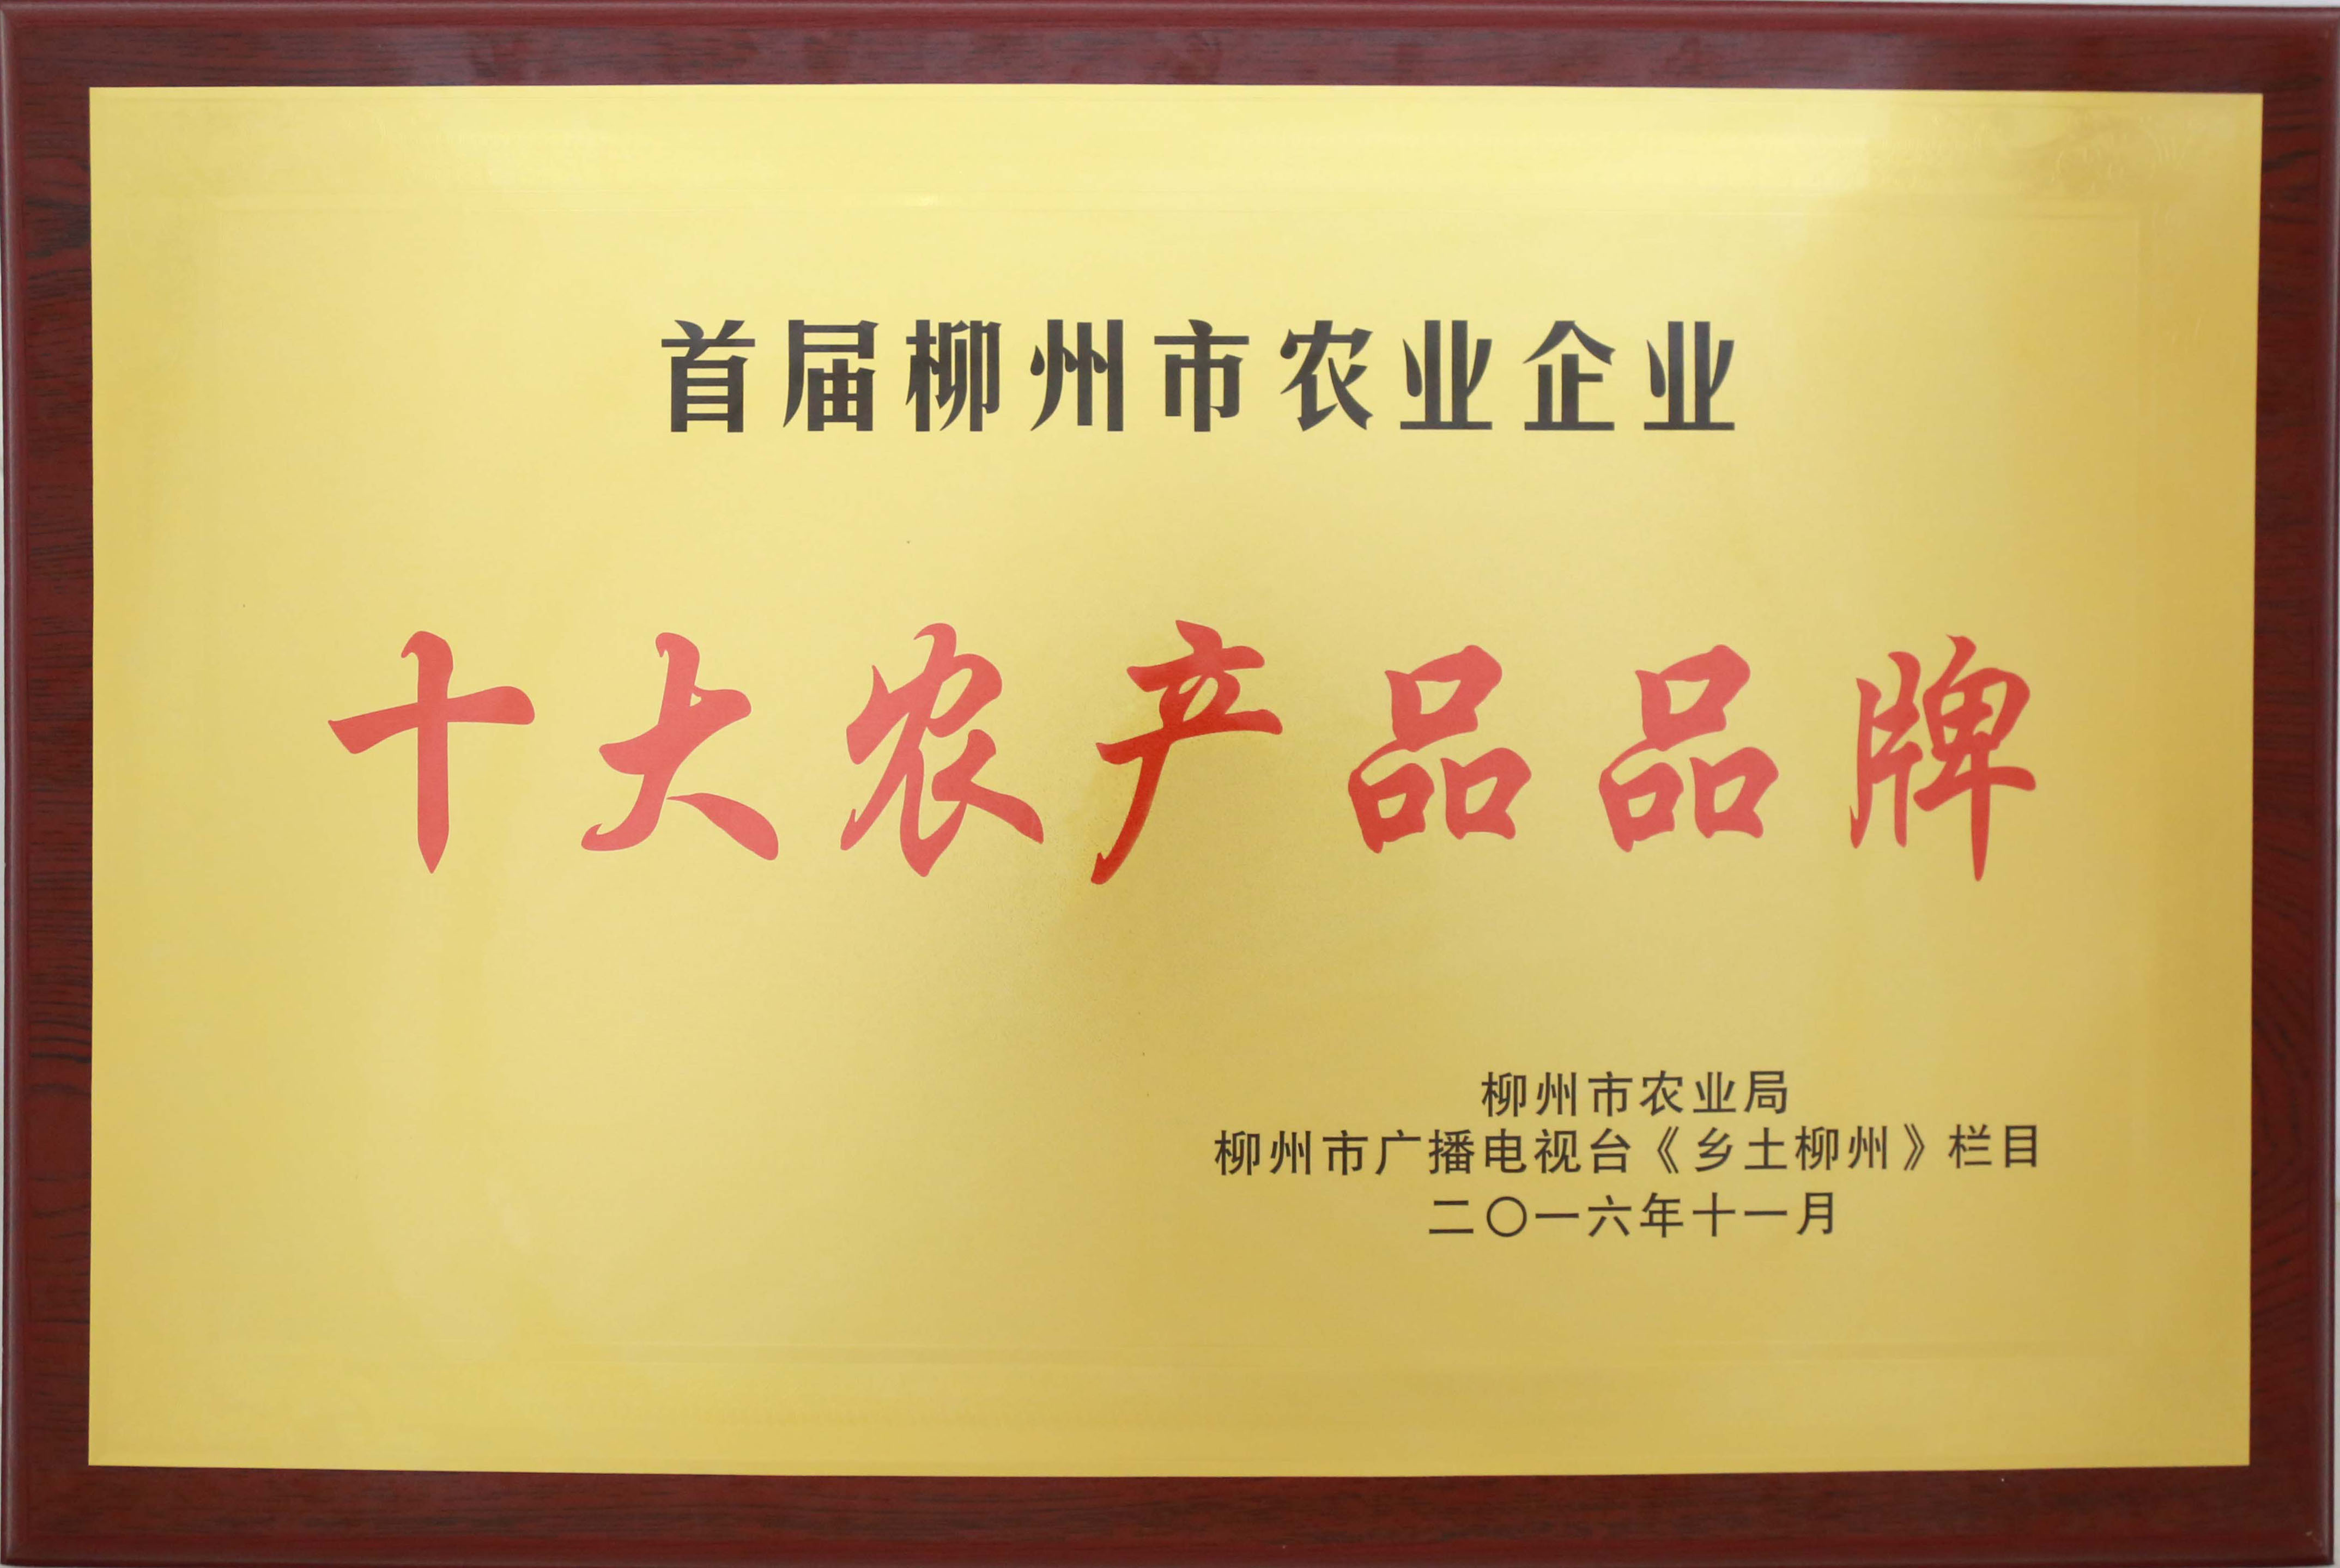 2016年，腾博会官网集团荣获首届柳州市农业企业“十大农产品品牌”